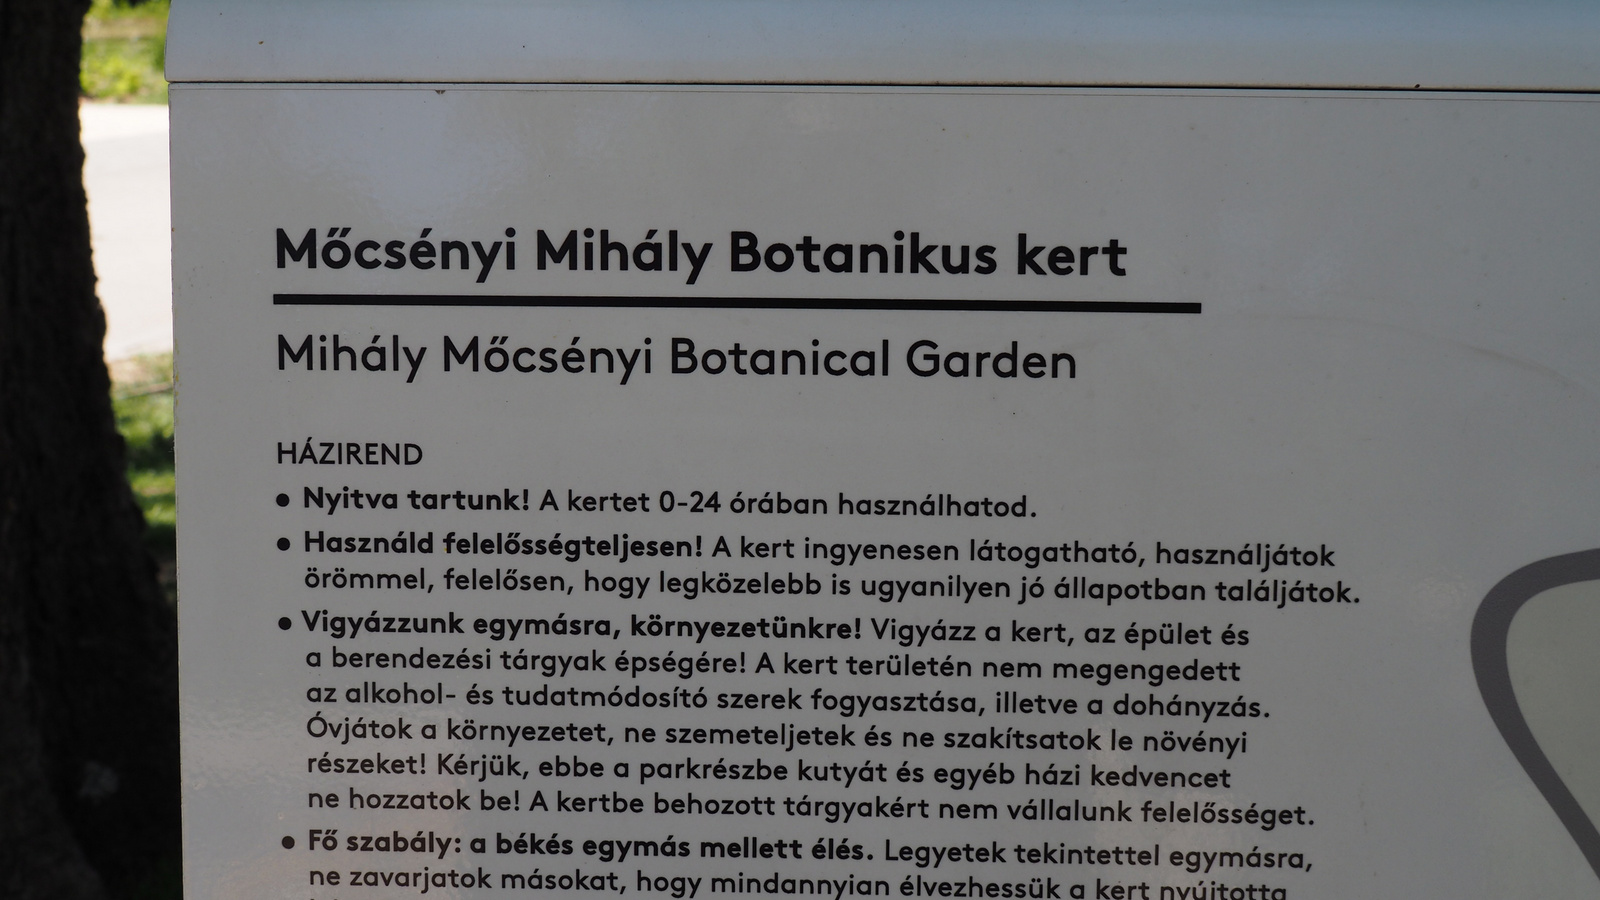 Budapest, Városliget, Mőcsényi Mihály botanikus kert, SzG3